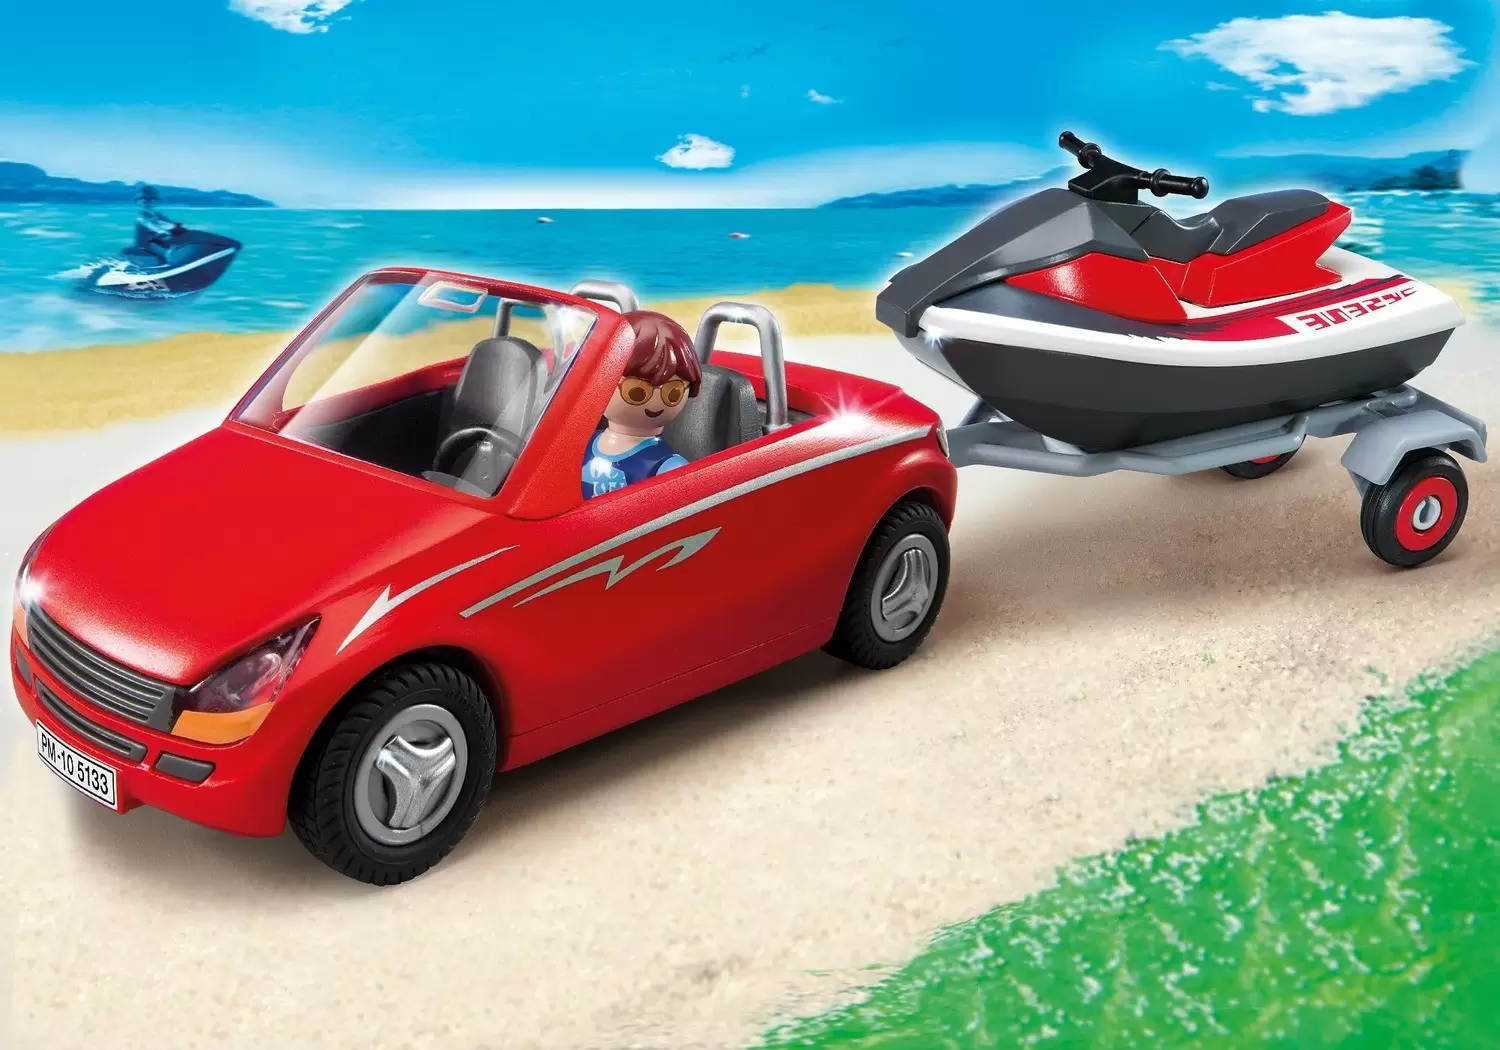 Playmobil en vacances - Voiture avec remorque et jet-ski